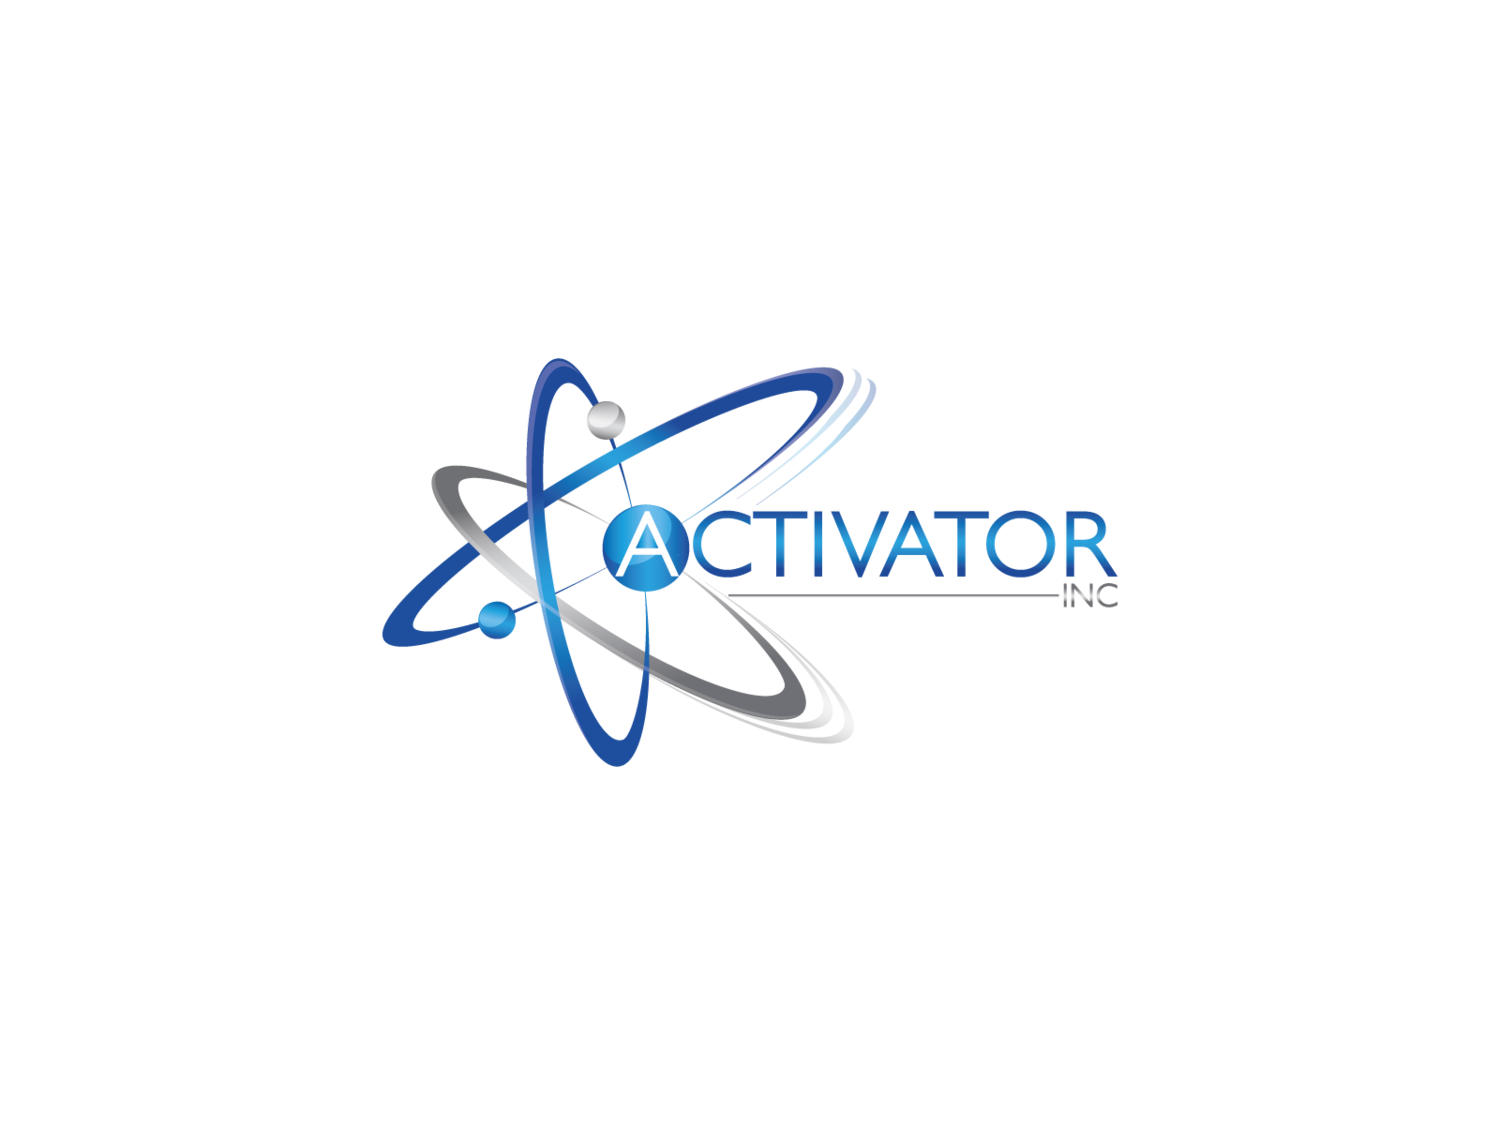 Activator, Inc. 